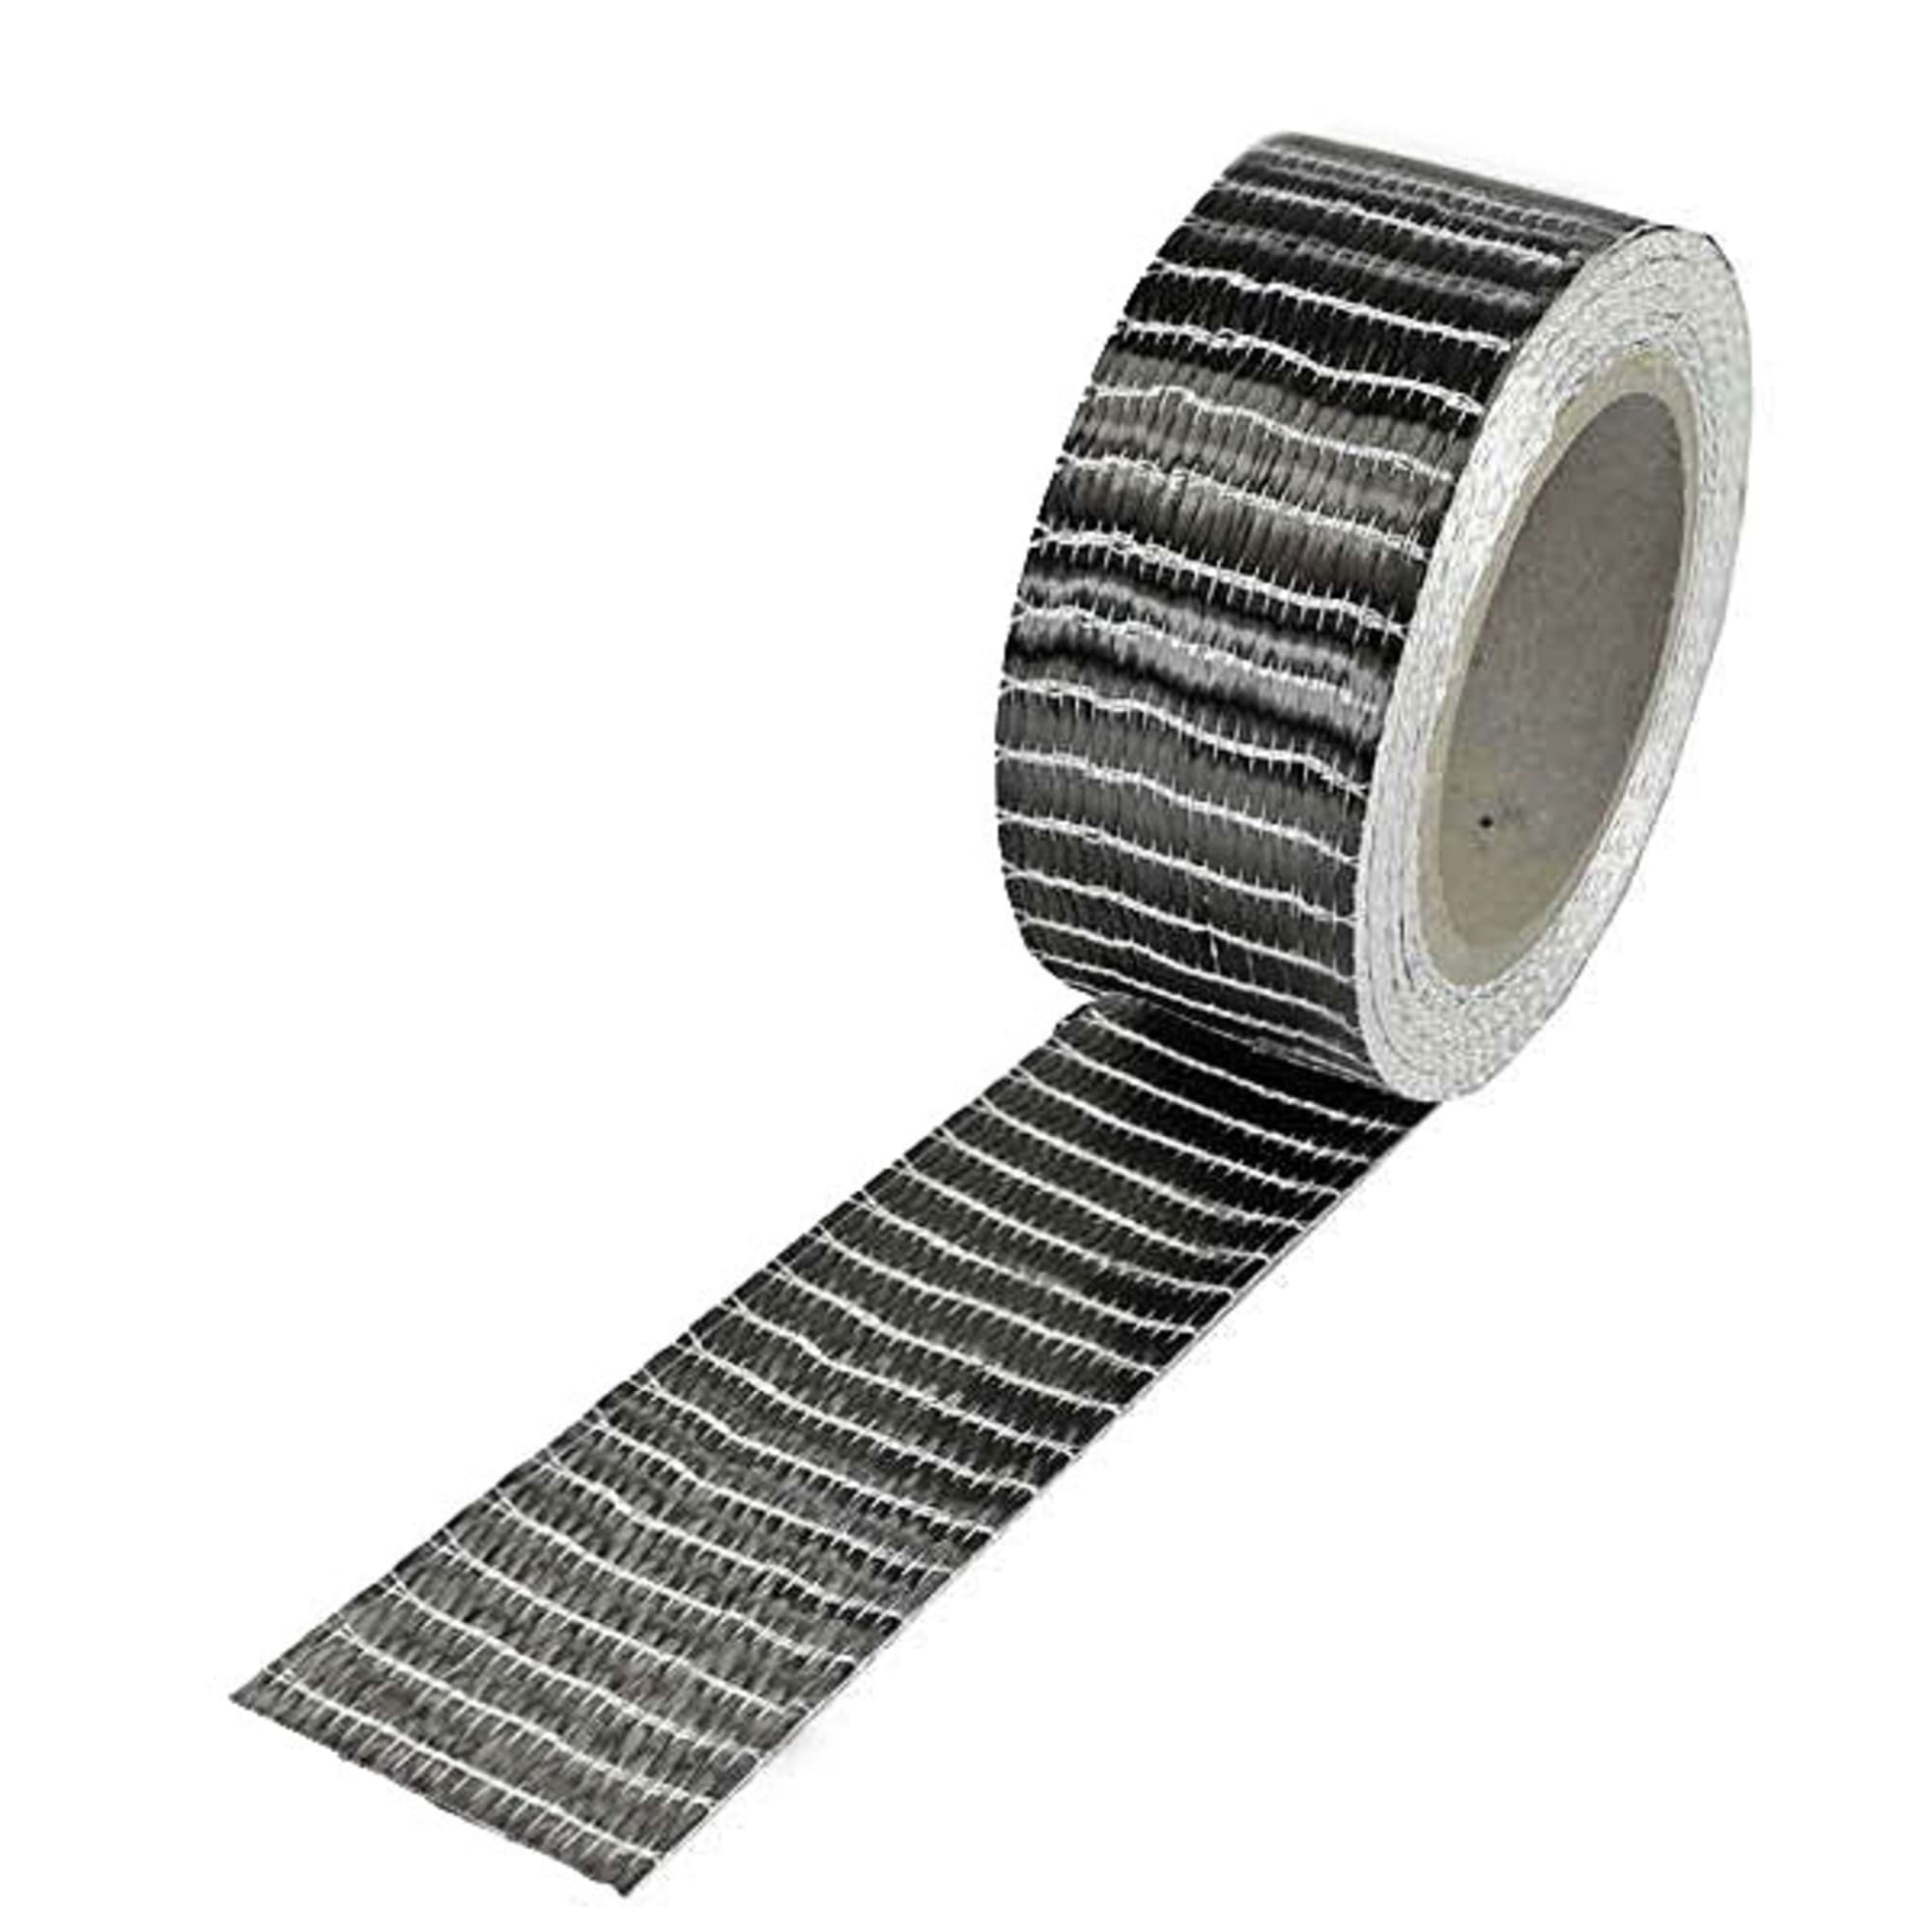 Carbon fibre tape 250 g/m² (unidirectional) 25 mm